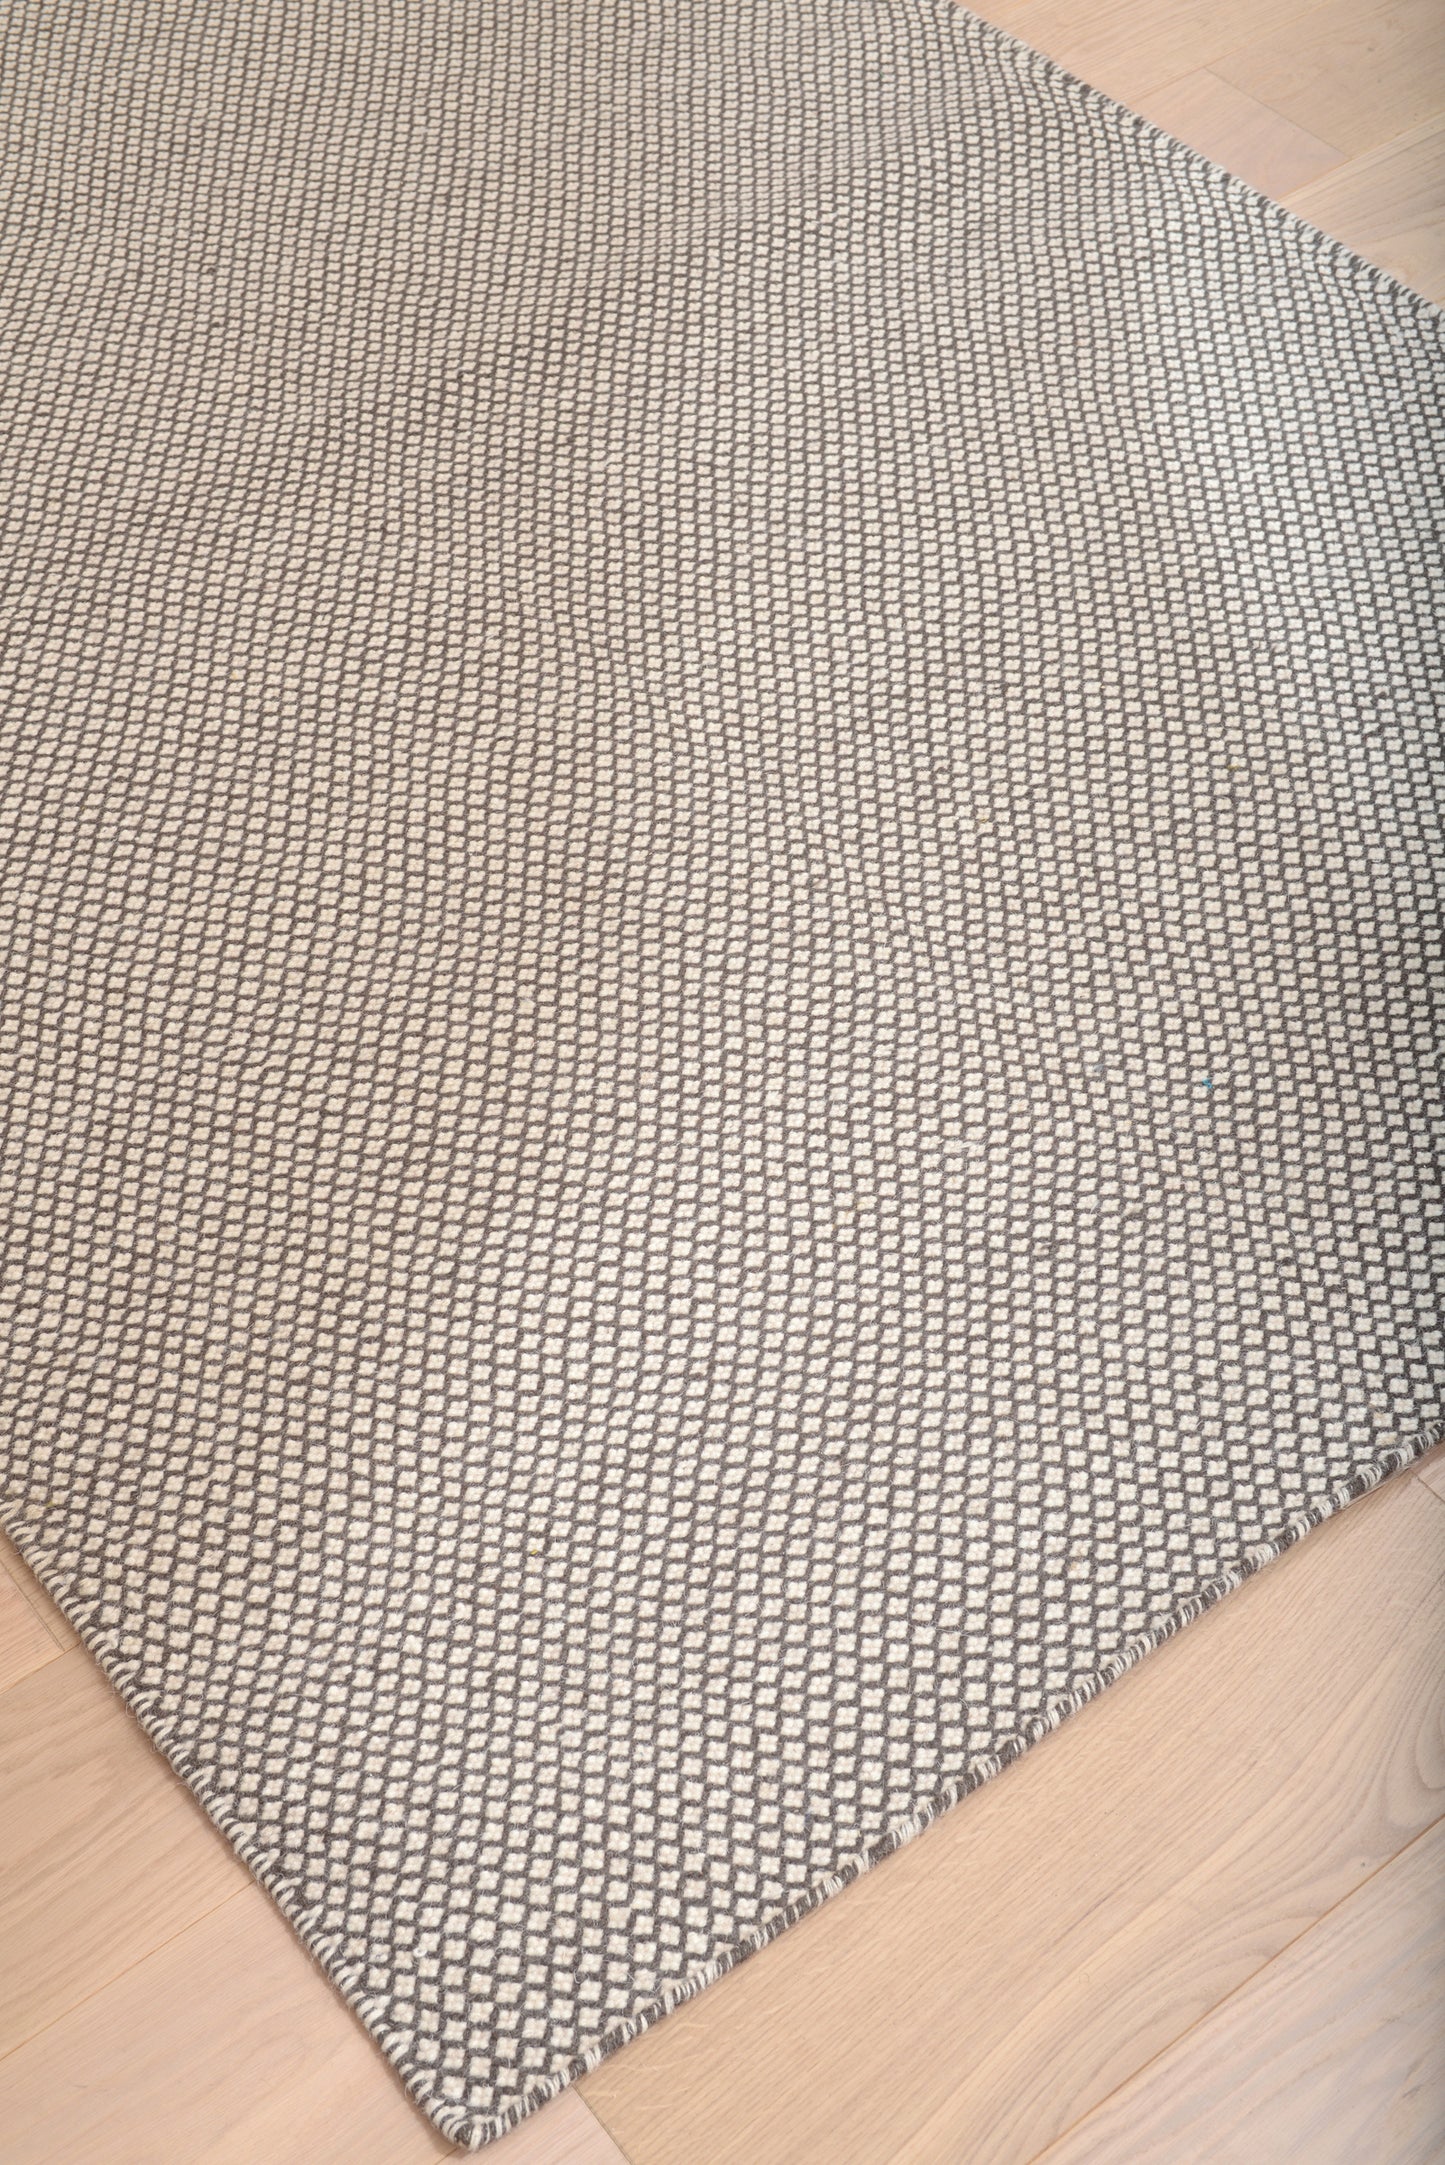 India Gray/White Area Rug 5x8